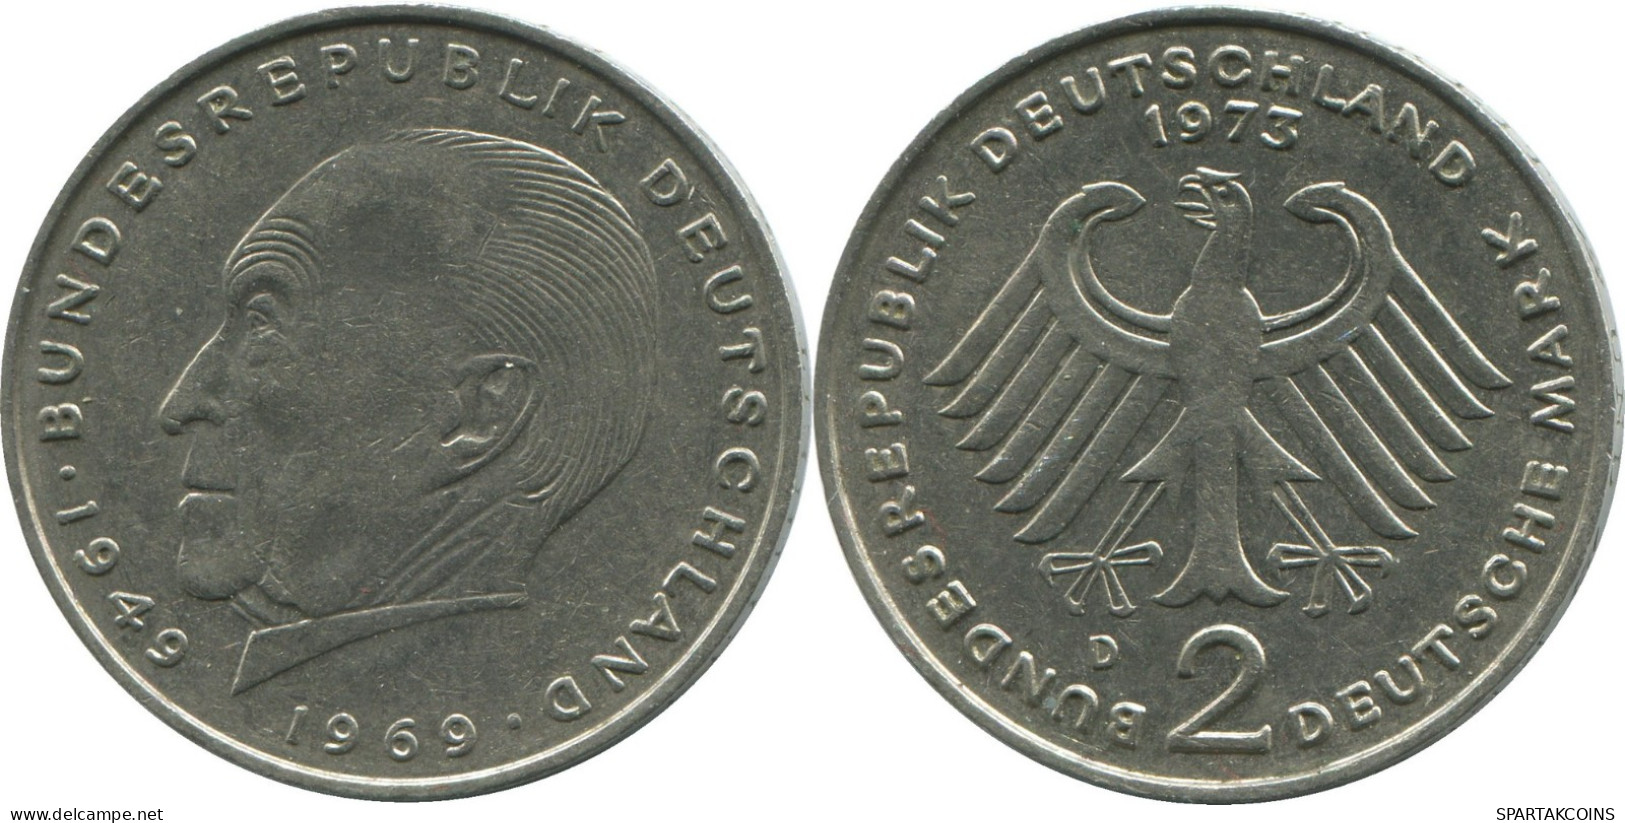 2 DM 1973 D BRD ALEMANIA Moneda GERMANY #DE10388.5.E.A - 2 Marchi